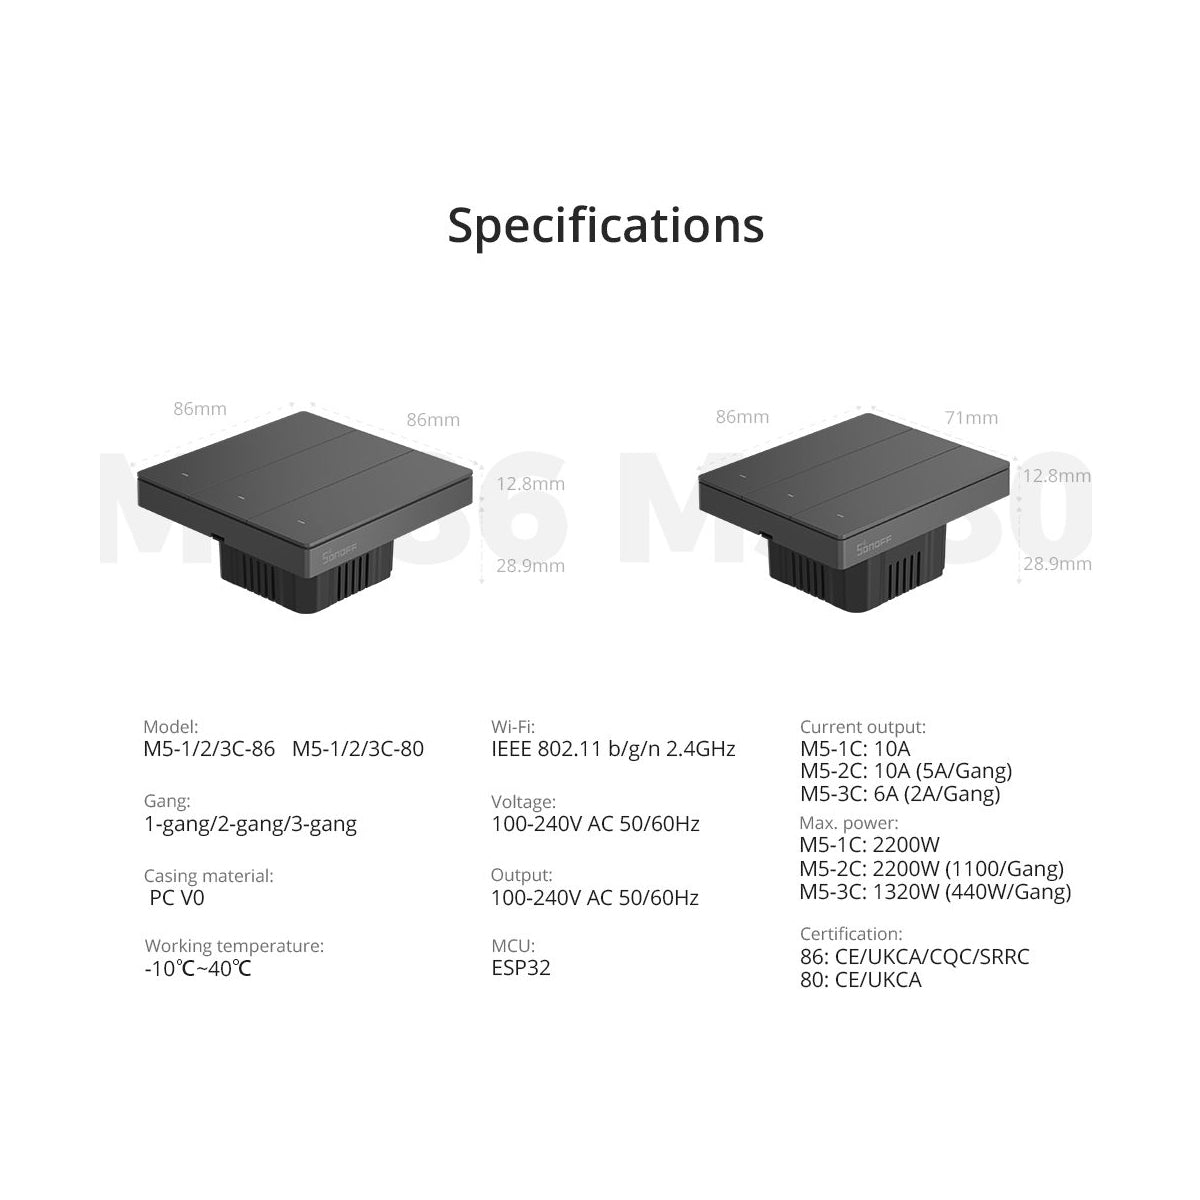 GloboStar® 80090 SONOFF M5-1C-86 SwitchMan Mechanical Smart Switch WiFi & Bluetooth AC 100-240V Max 10A 2200W (10A/Way) 1 Way